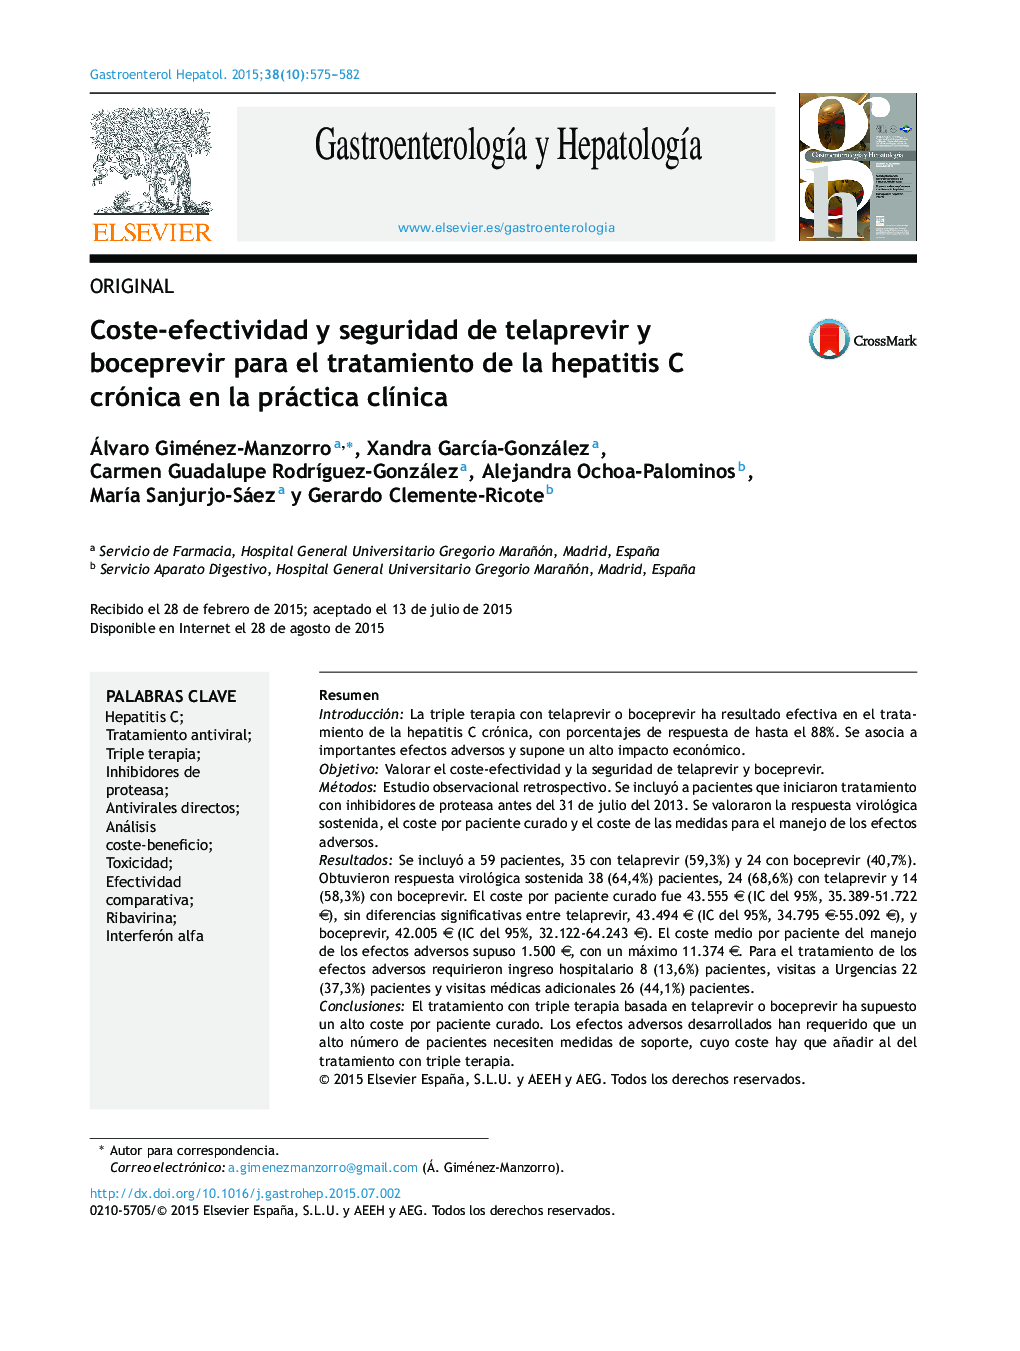 Coste-efectividad y seguridad de telaprevir y boceprevir para el tratamiento de la hepatitis C crónica en la práctica clínica